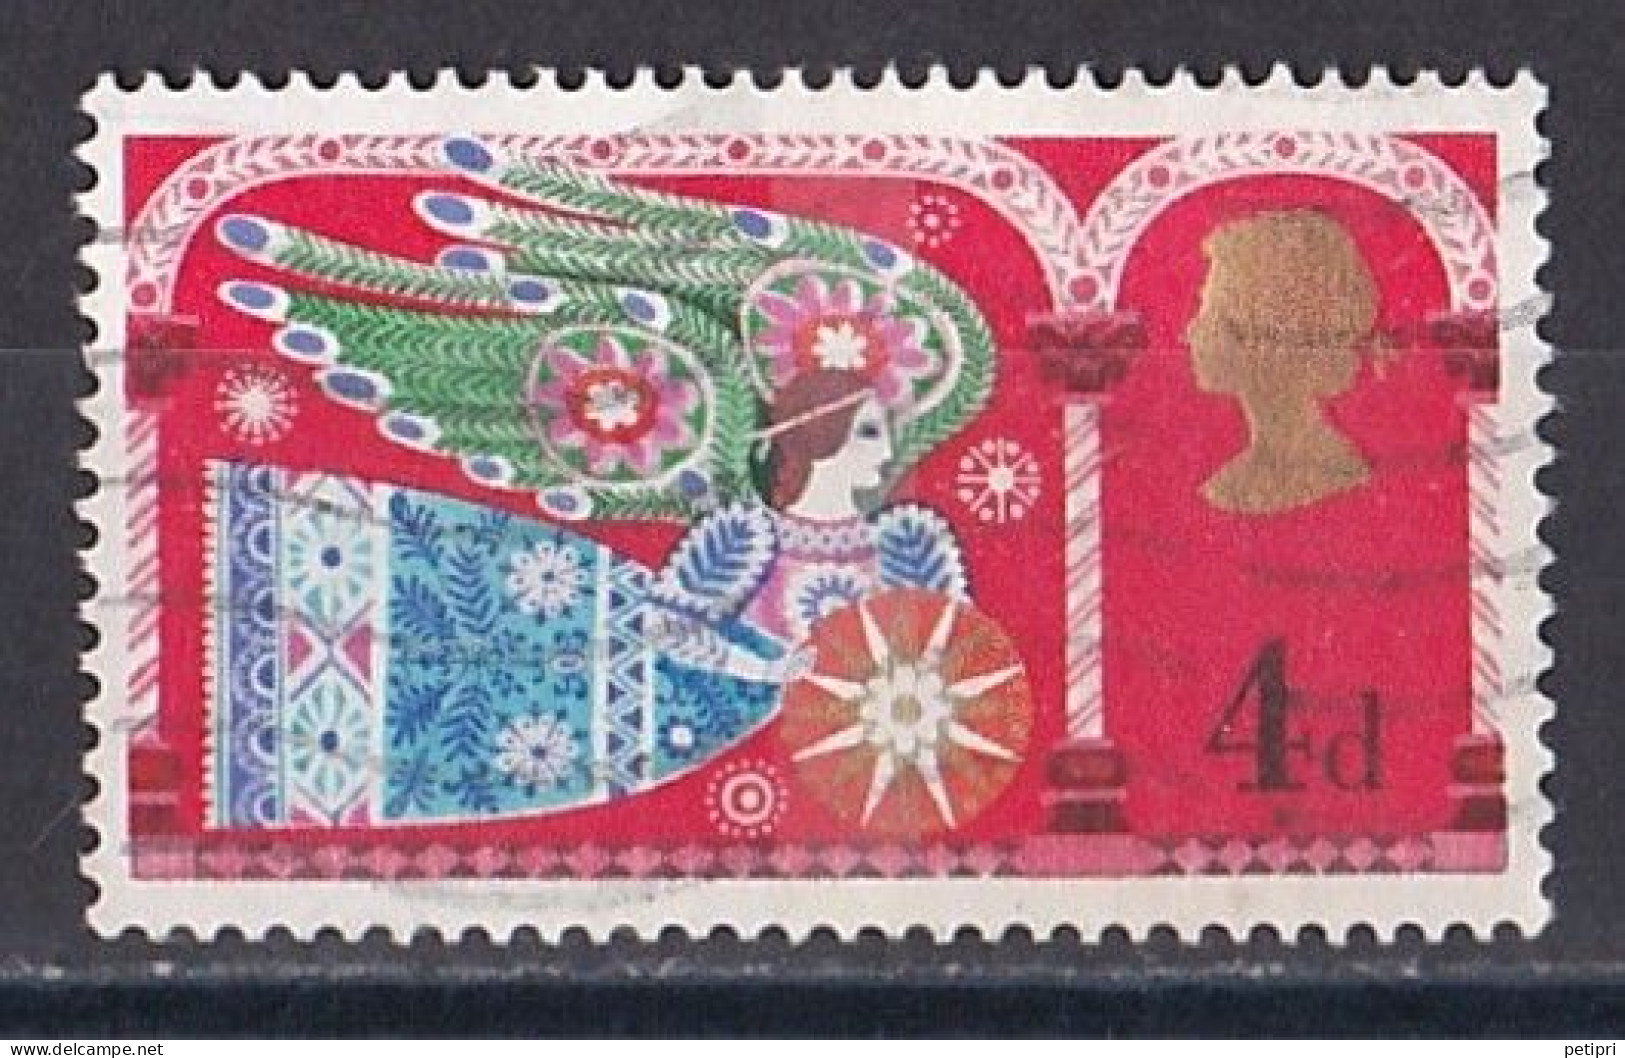 Grande Bretagne - 1952 - 1971 -  Elisabeth II -  Y&T N °  579  Oblitéré - Used Stamps